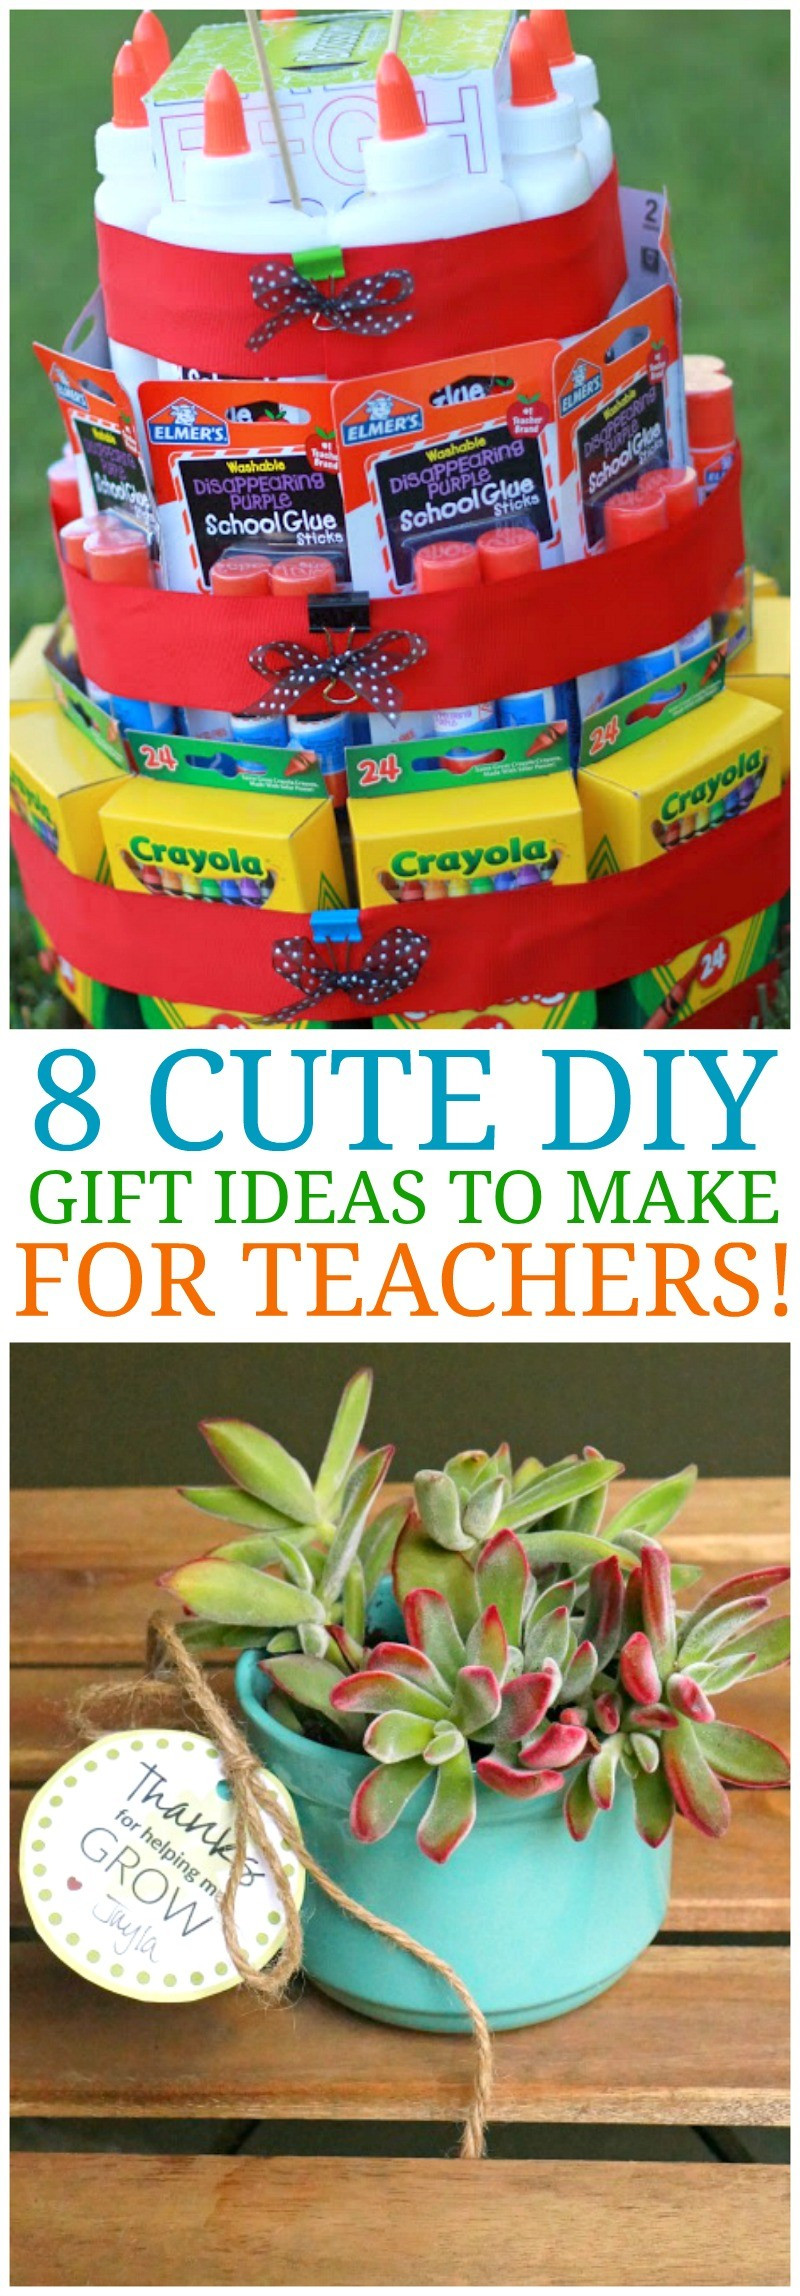 DIY Teacher Gifts Ideas
 8 Cute DIY Teacher Appreciation Ideas & Homemade Gifts for